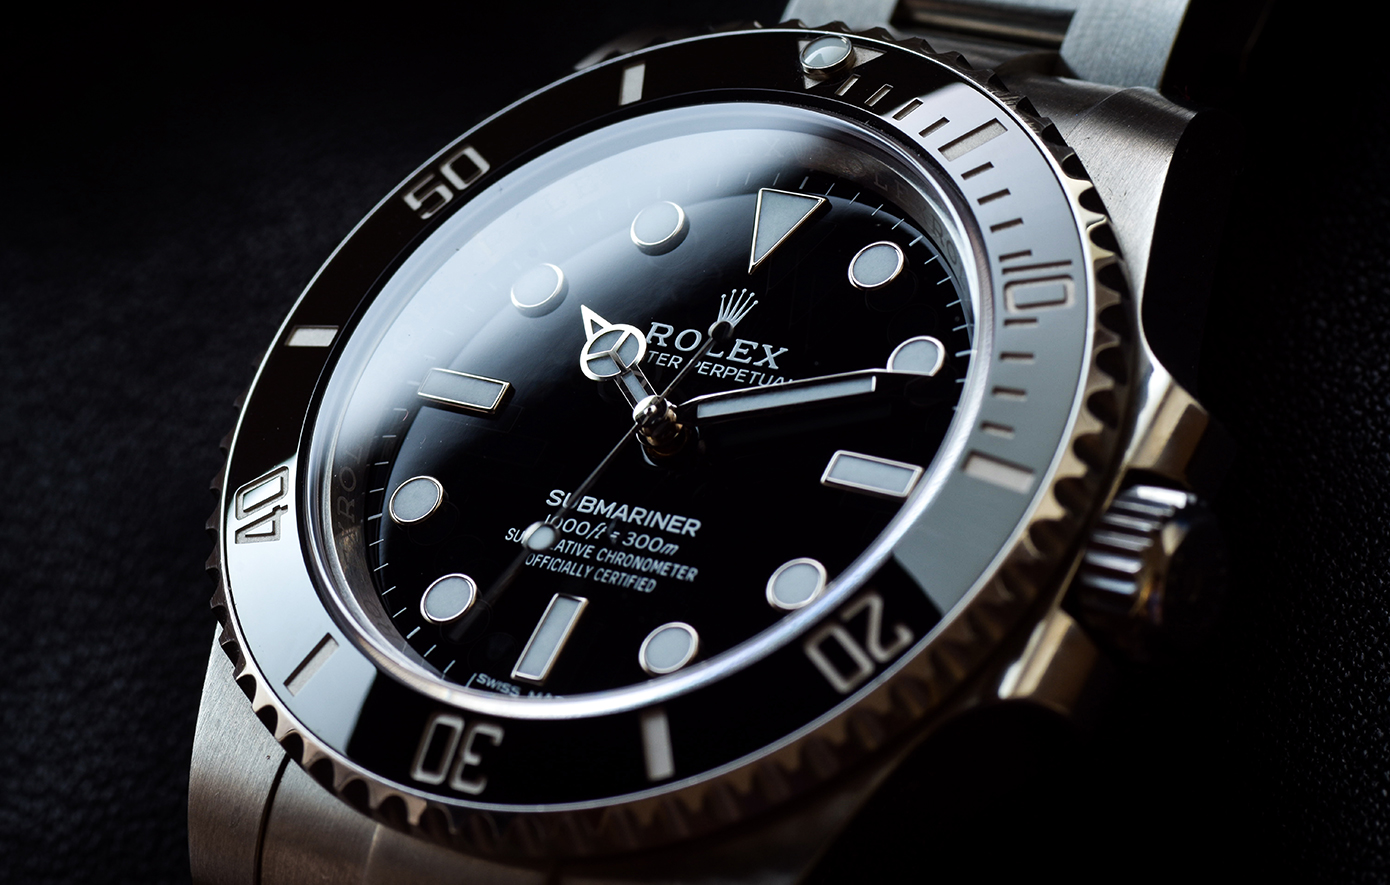 Γιατί ένα ακριβό ρολόι δεν είναι καλύτερη επένδυση από τον χρυσό, σύμφωνα με το αφεντικό της Rolex